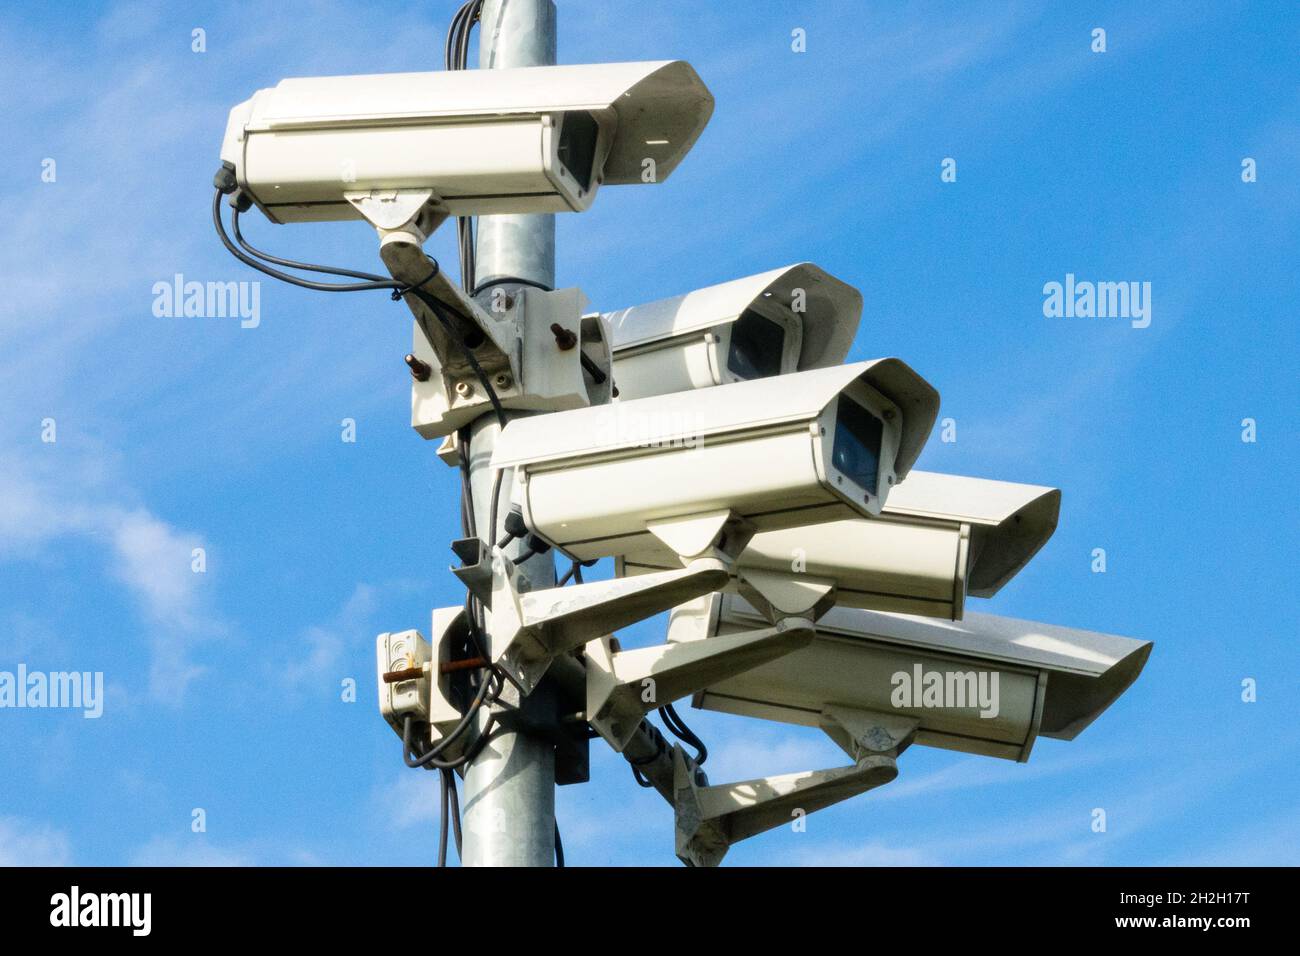 Surveillance cameras CCTV cameras monitoring public space Germany Stock Photo